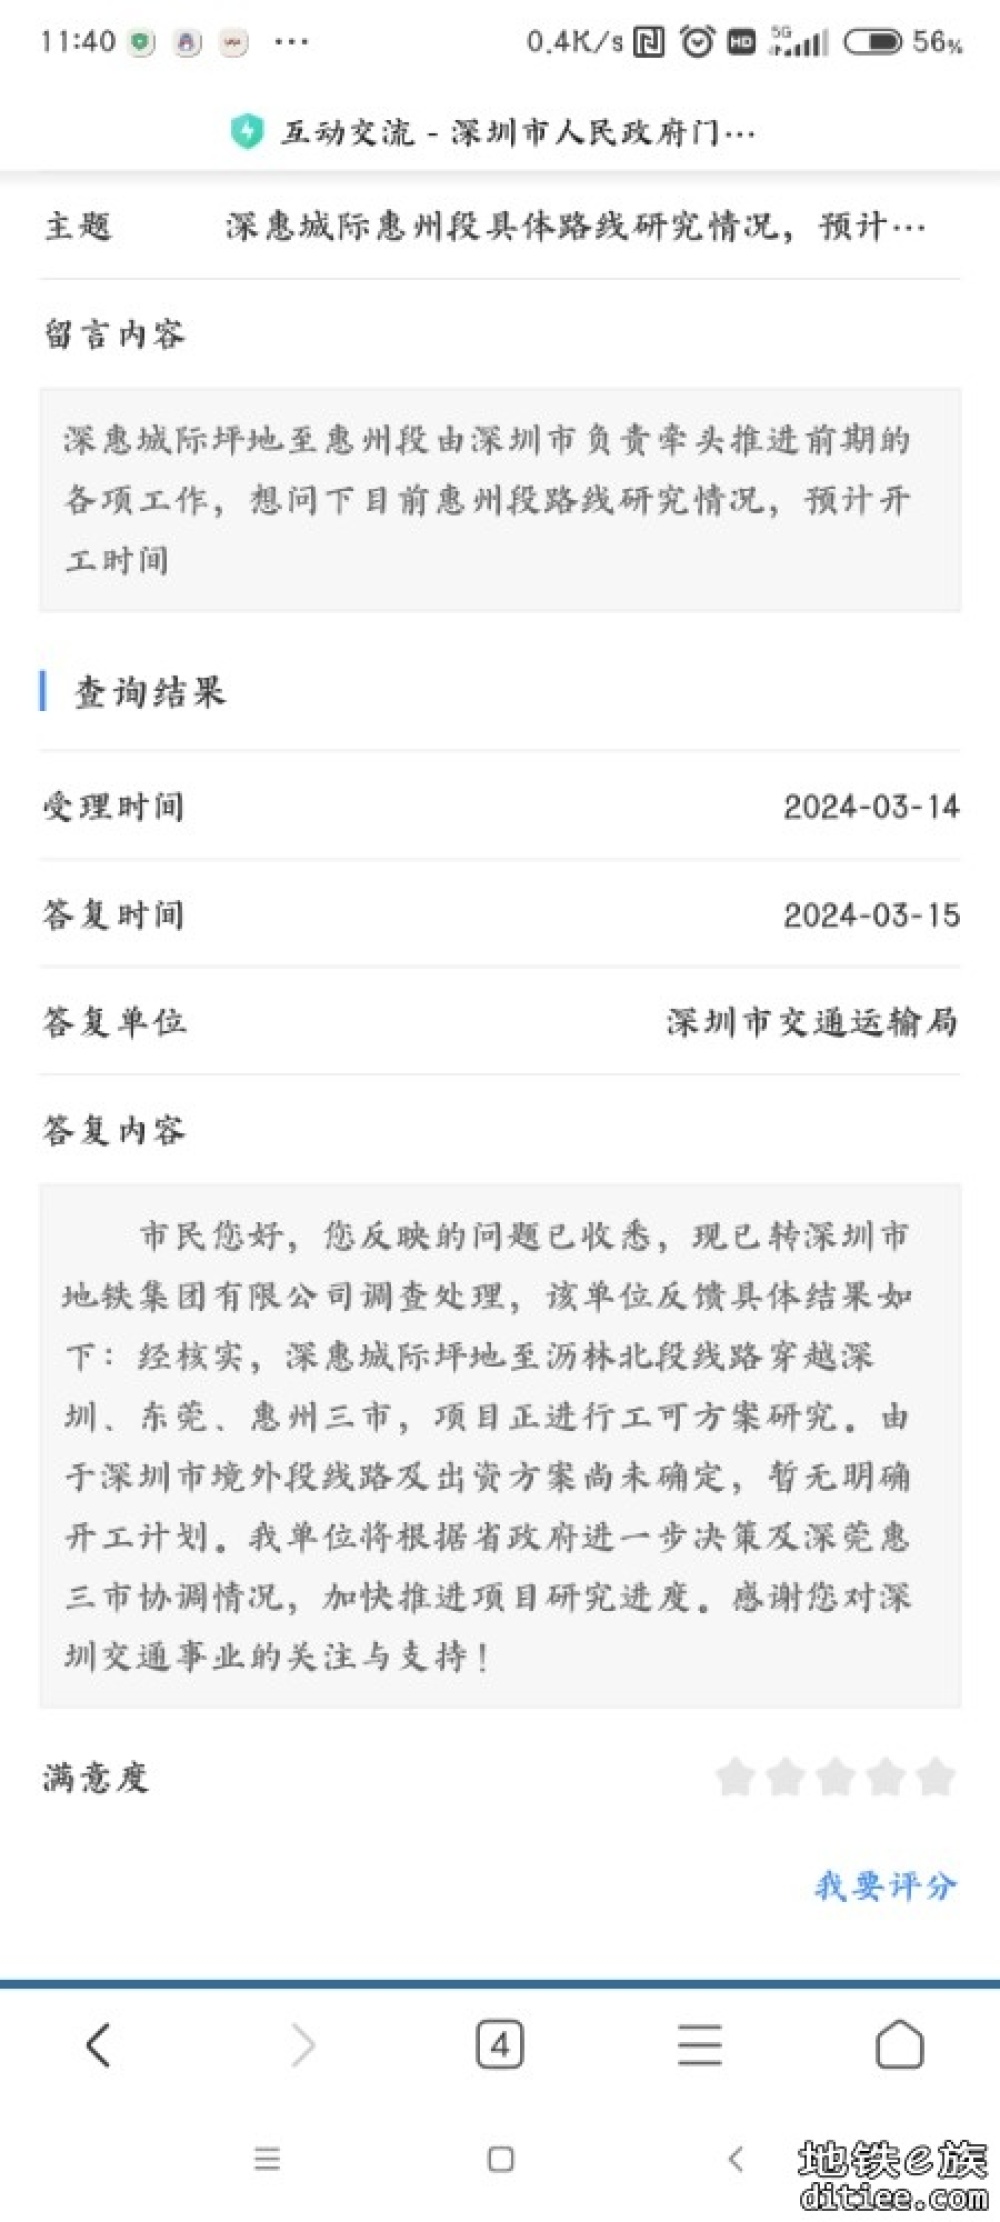 深惠城际惠州段还是卡在钱的问题上